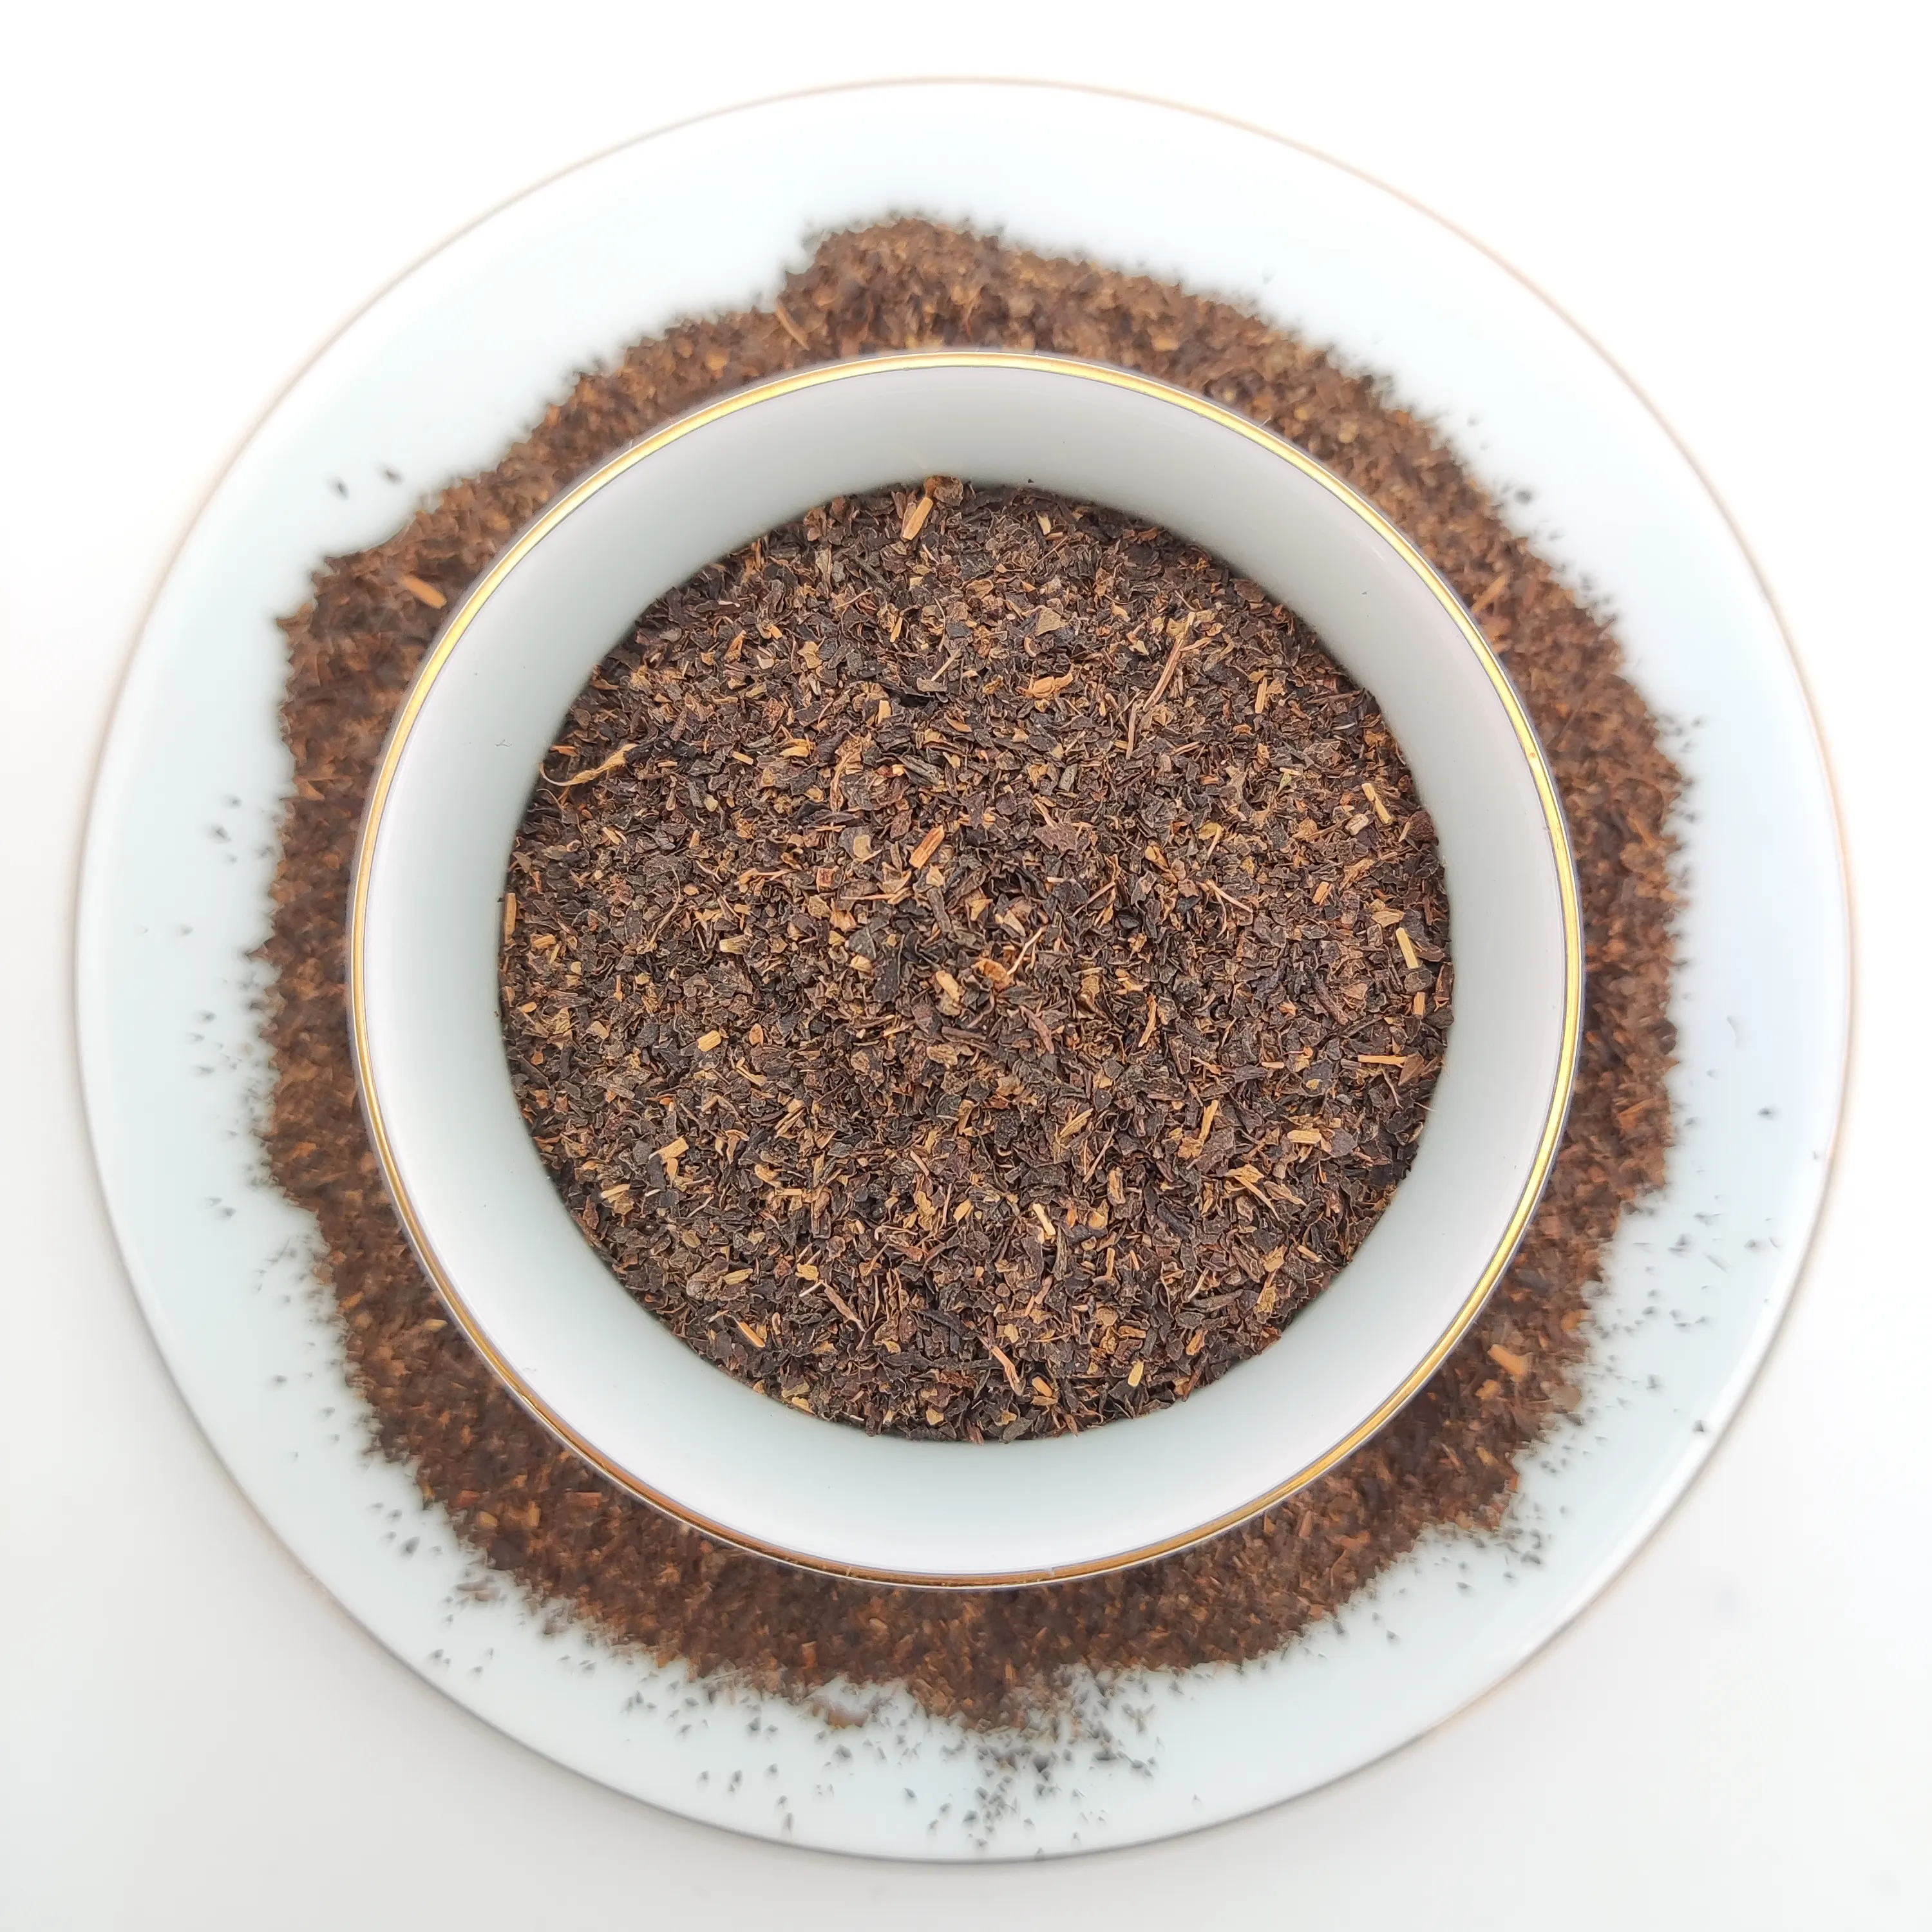 Precio competitivo y té negro de alta calidad Té negro orgánico CTC Té en polvo en uso diario